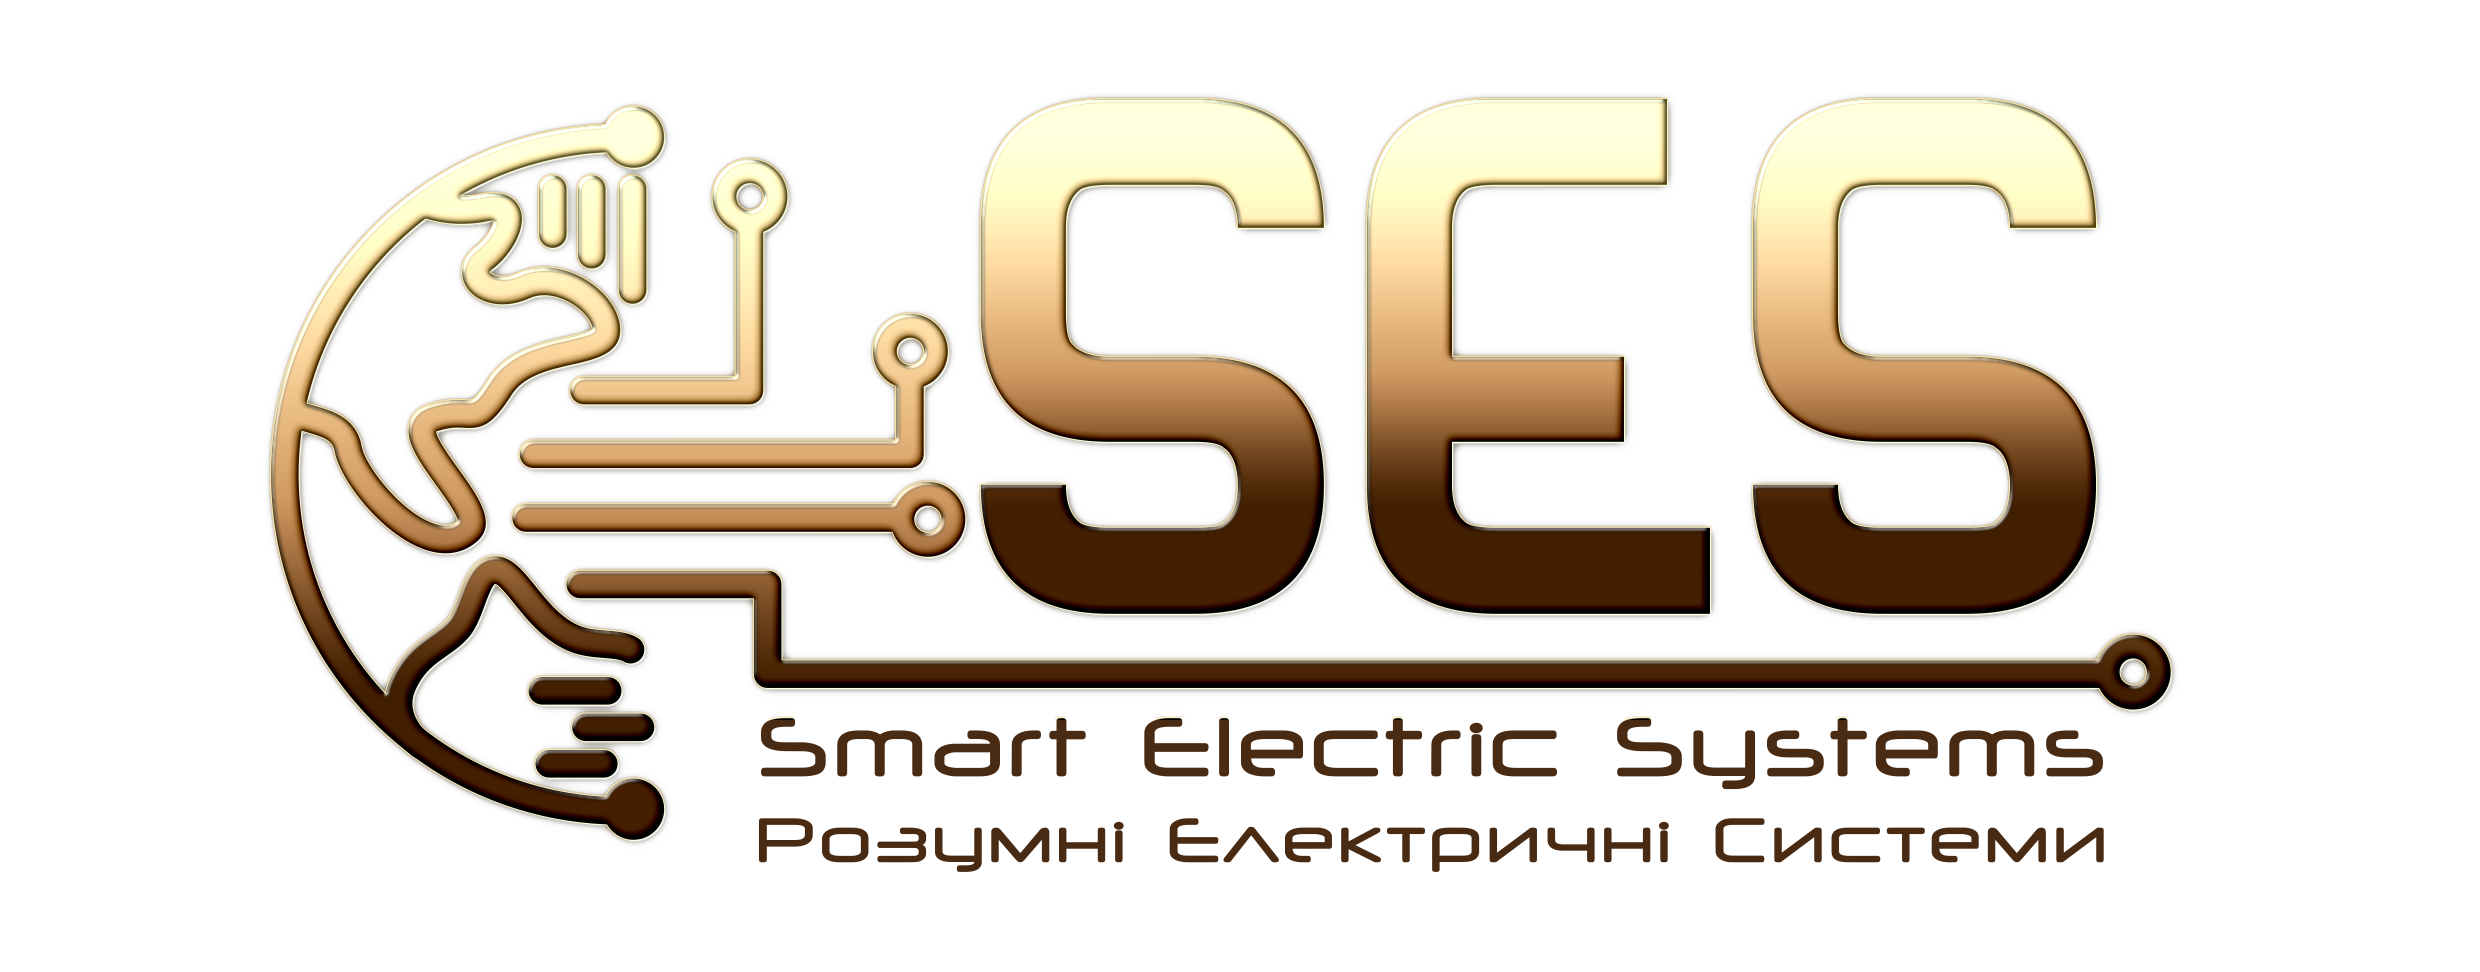 Розумні Електричні Системи (Smart Electric Systems)